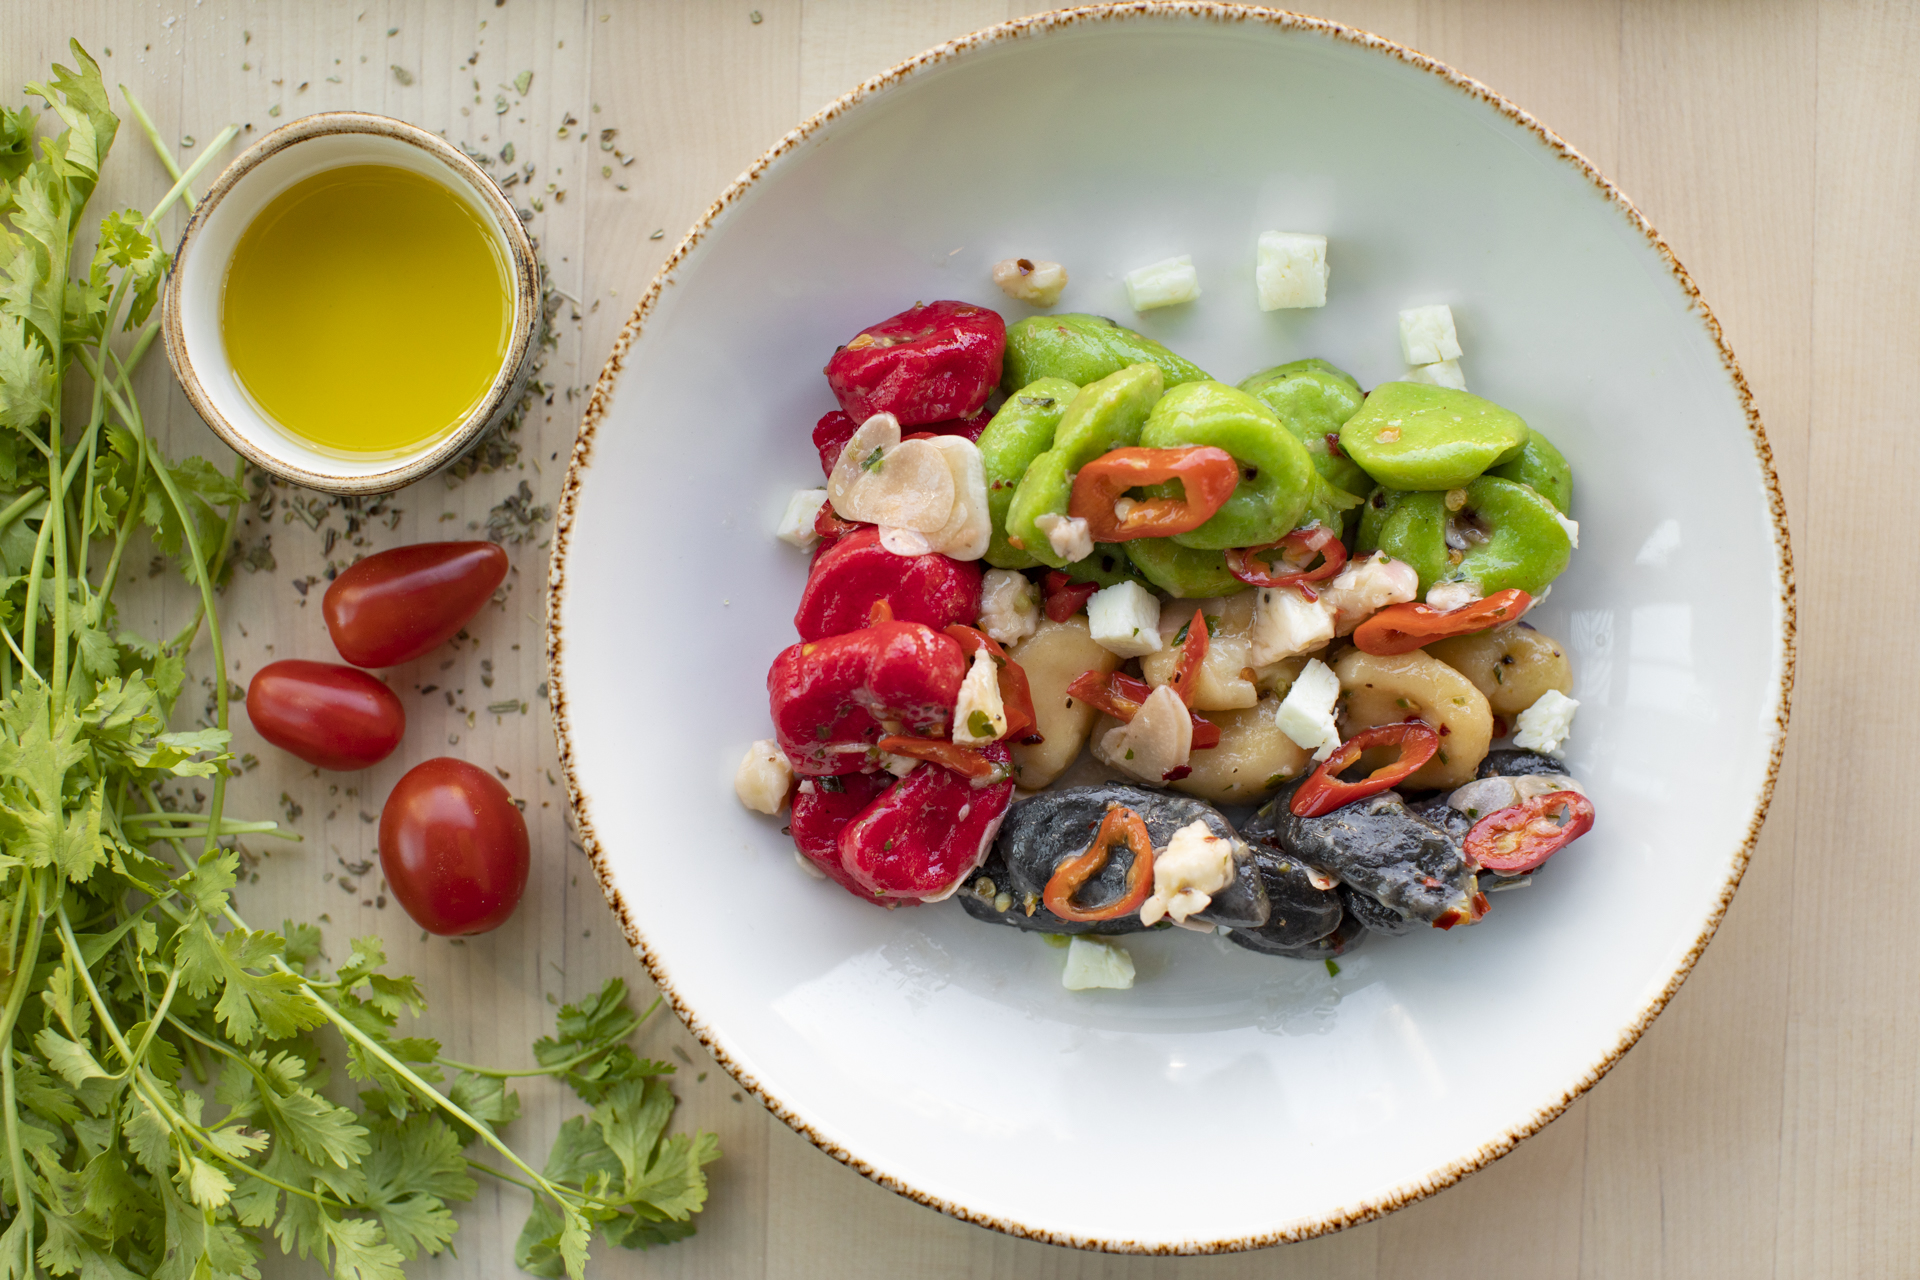 مطعم كوباستا يقدم أطباق لذيذة بألوان علم الإمارات إحتفالاً بالإتحاد